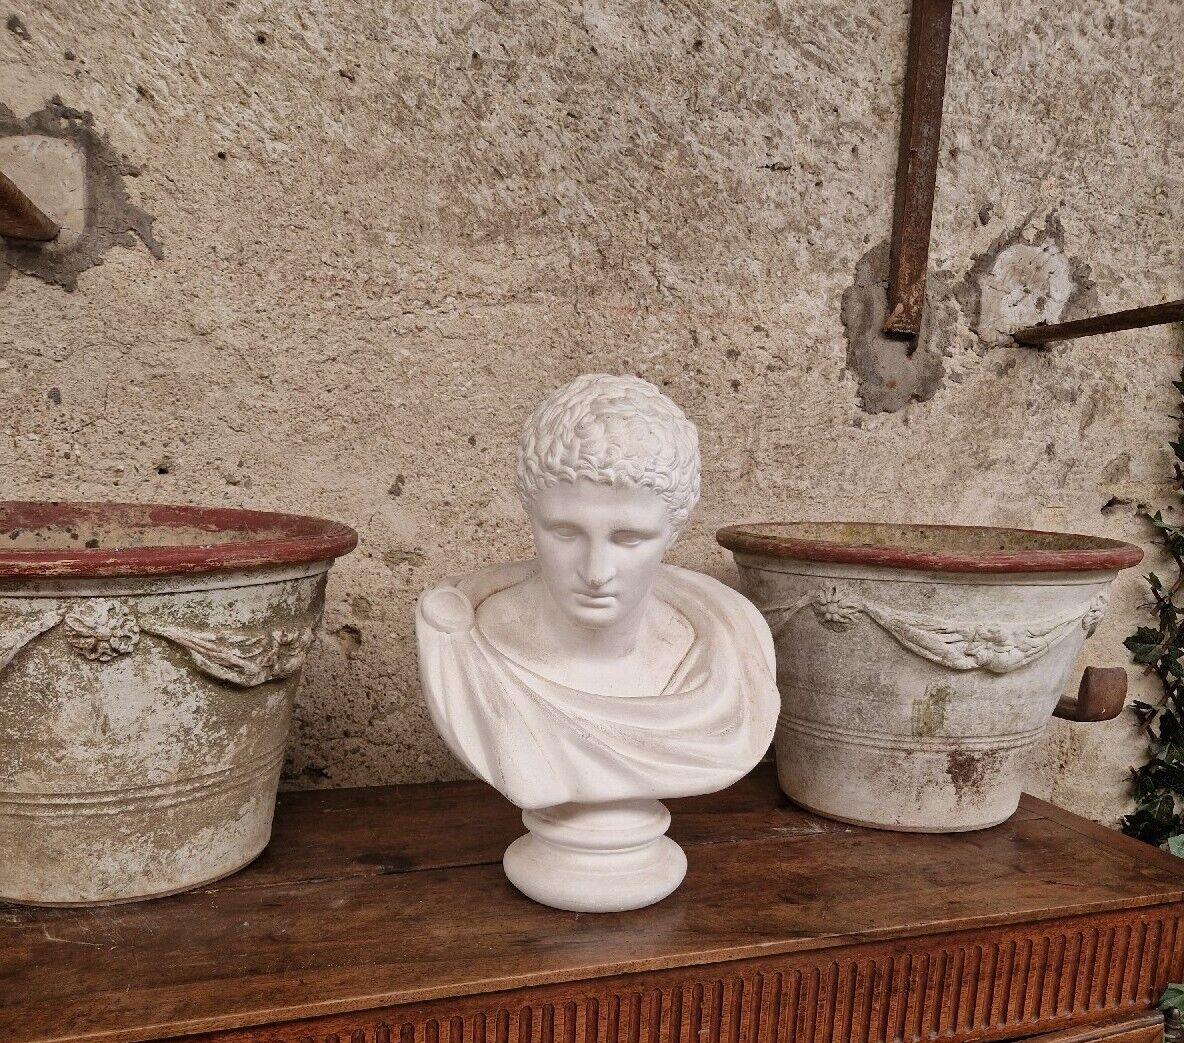 Cette magnifique sculpture est une représentation étonnante du célèbre empereur romain Marc Antoine. La pièce est fabriquée en plâtre de haute qualité et mesure une hauteur impressionnante de 50 cm pour une longueur de 38 cm et une largeur de 30 cm.